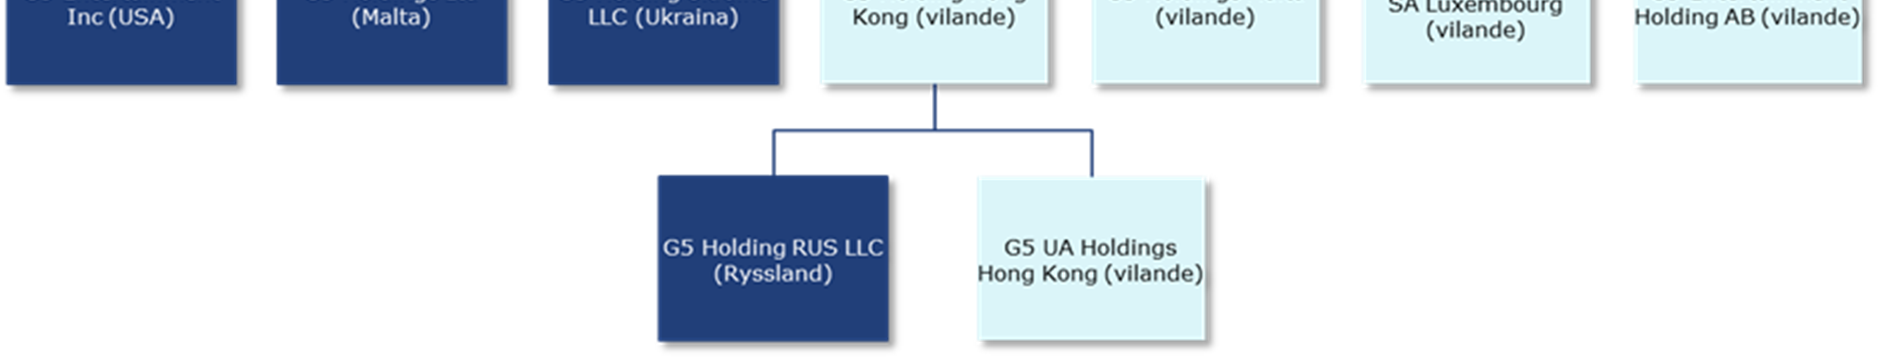 Organisationskarta, april 2014 Under 2013 hade G5 Entertainment AB rörelsedrivande dotterföretag i Ryssland, Ukraina, Malta, och USA, samt passiva dotterföretag i Sverige, Hong Kong och Luxembourg: